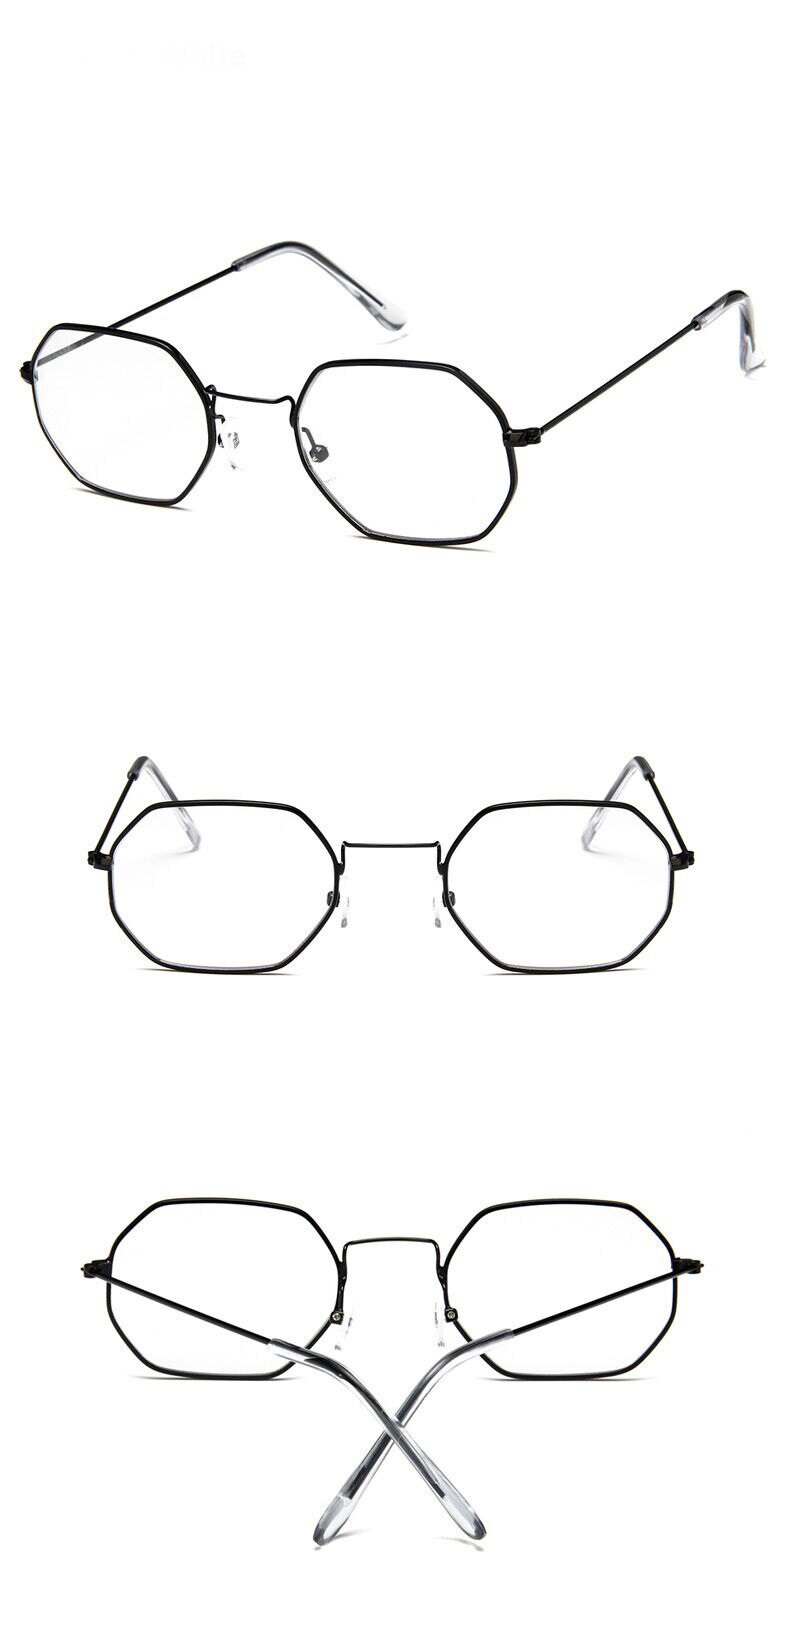 Classic Retro Fashion Sunglasses For Unisex-Unique and Classy